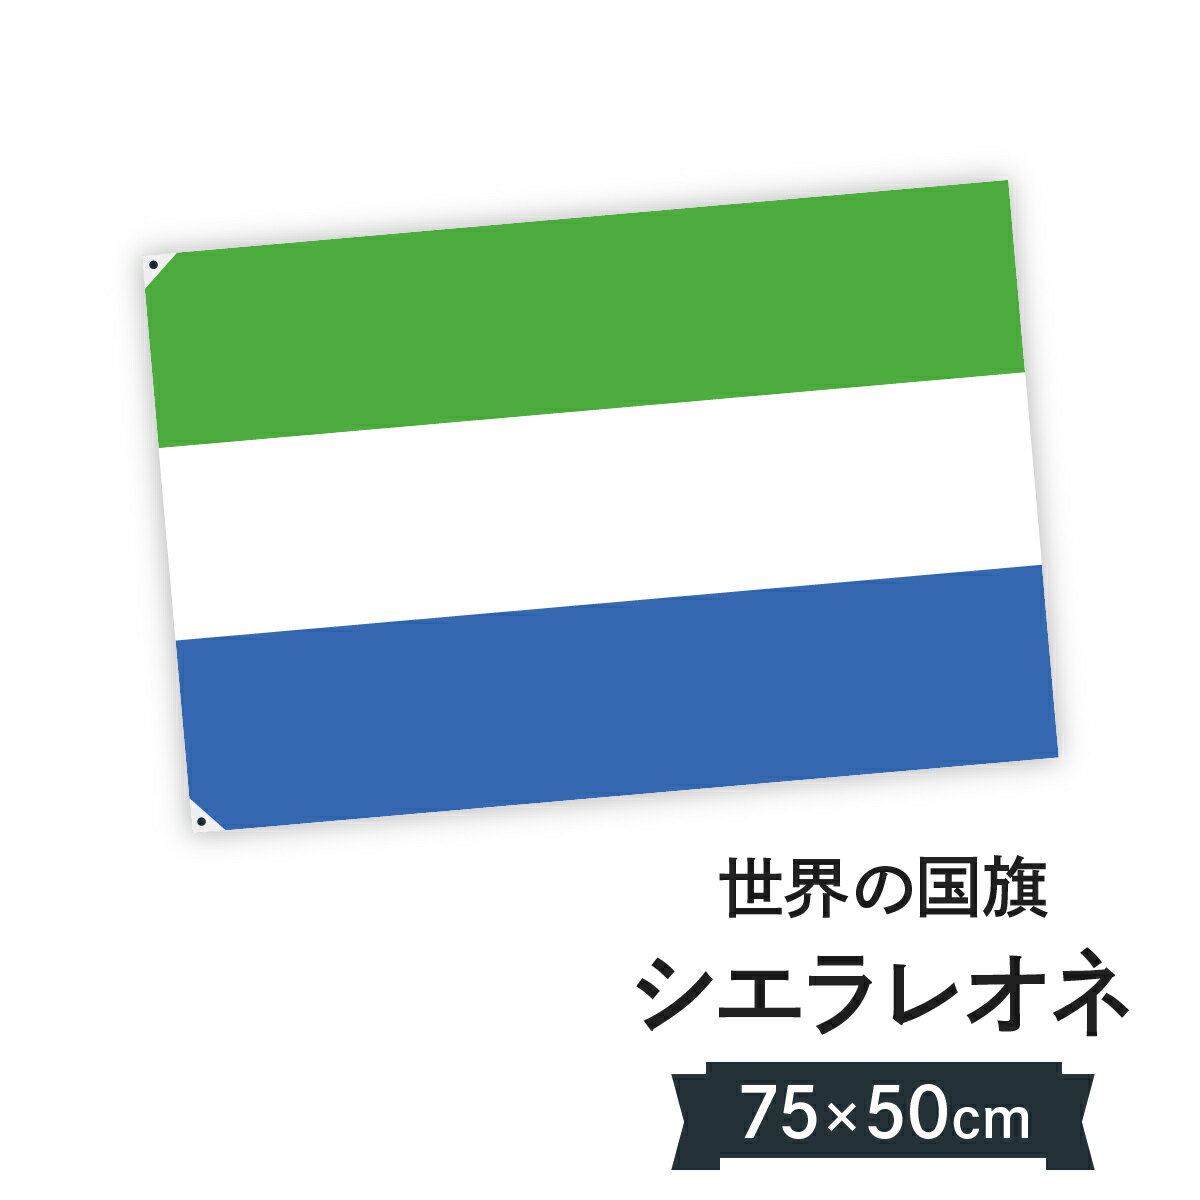 シエラレオネ共和国 国旗 W75cm H50cm 1